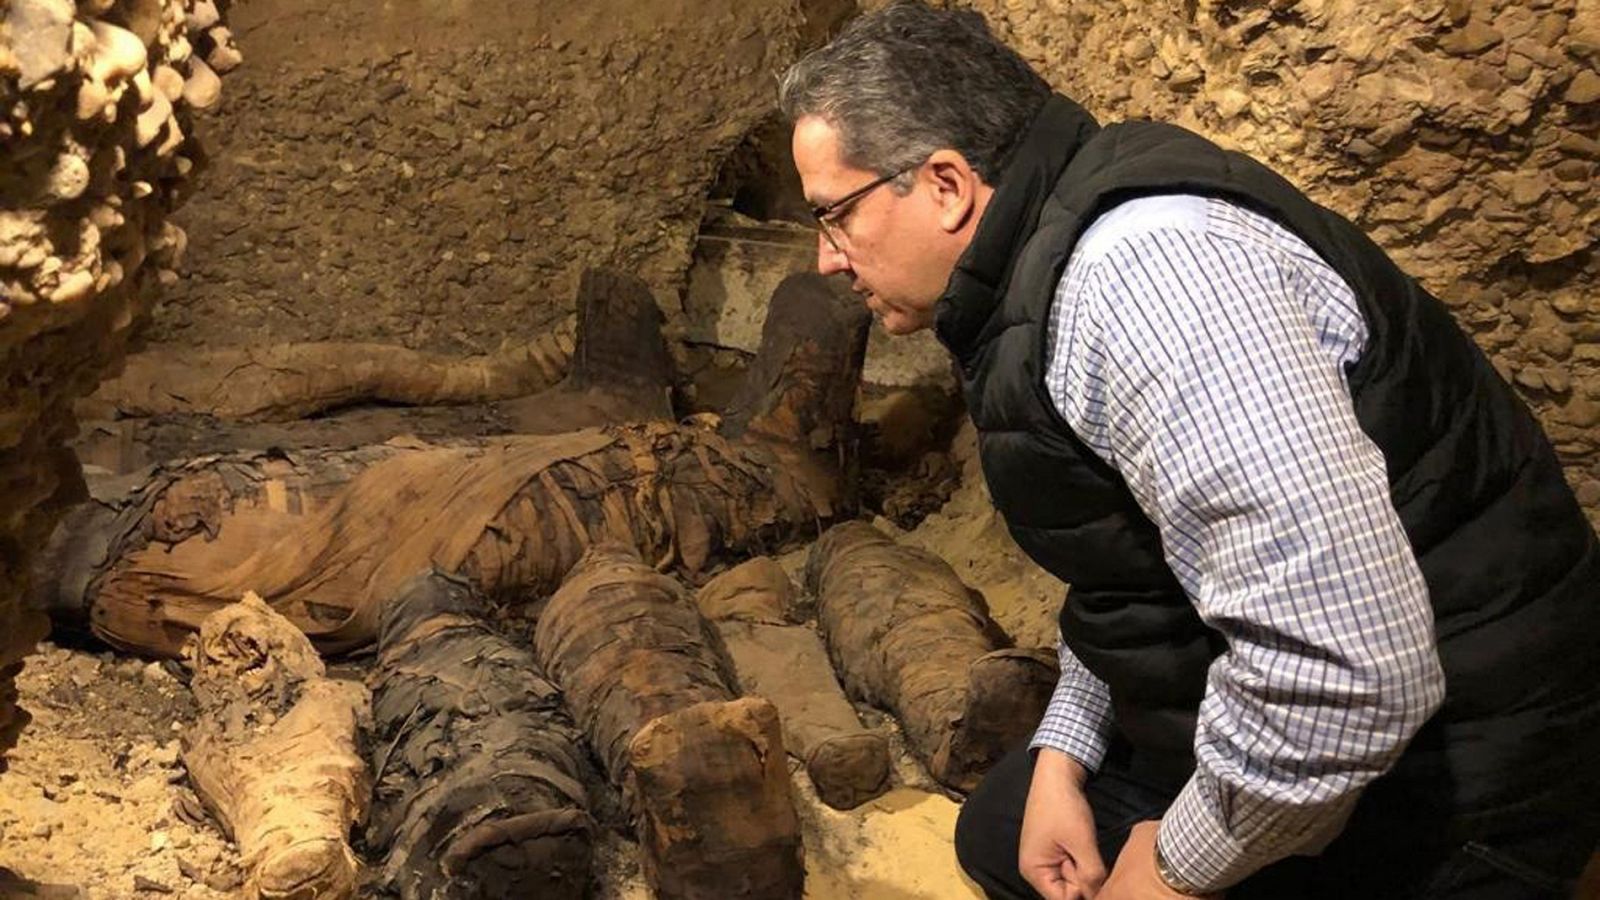 Egiptología: Hallan un grupo de momias de la época ptolemaica en el valle del Nilo - RTVE.es